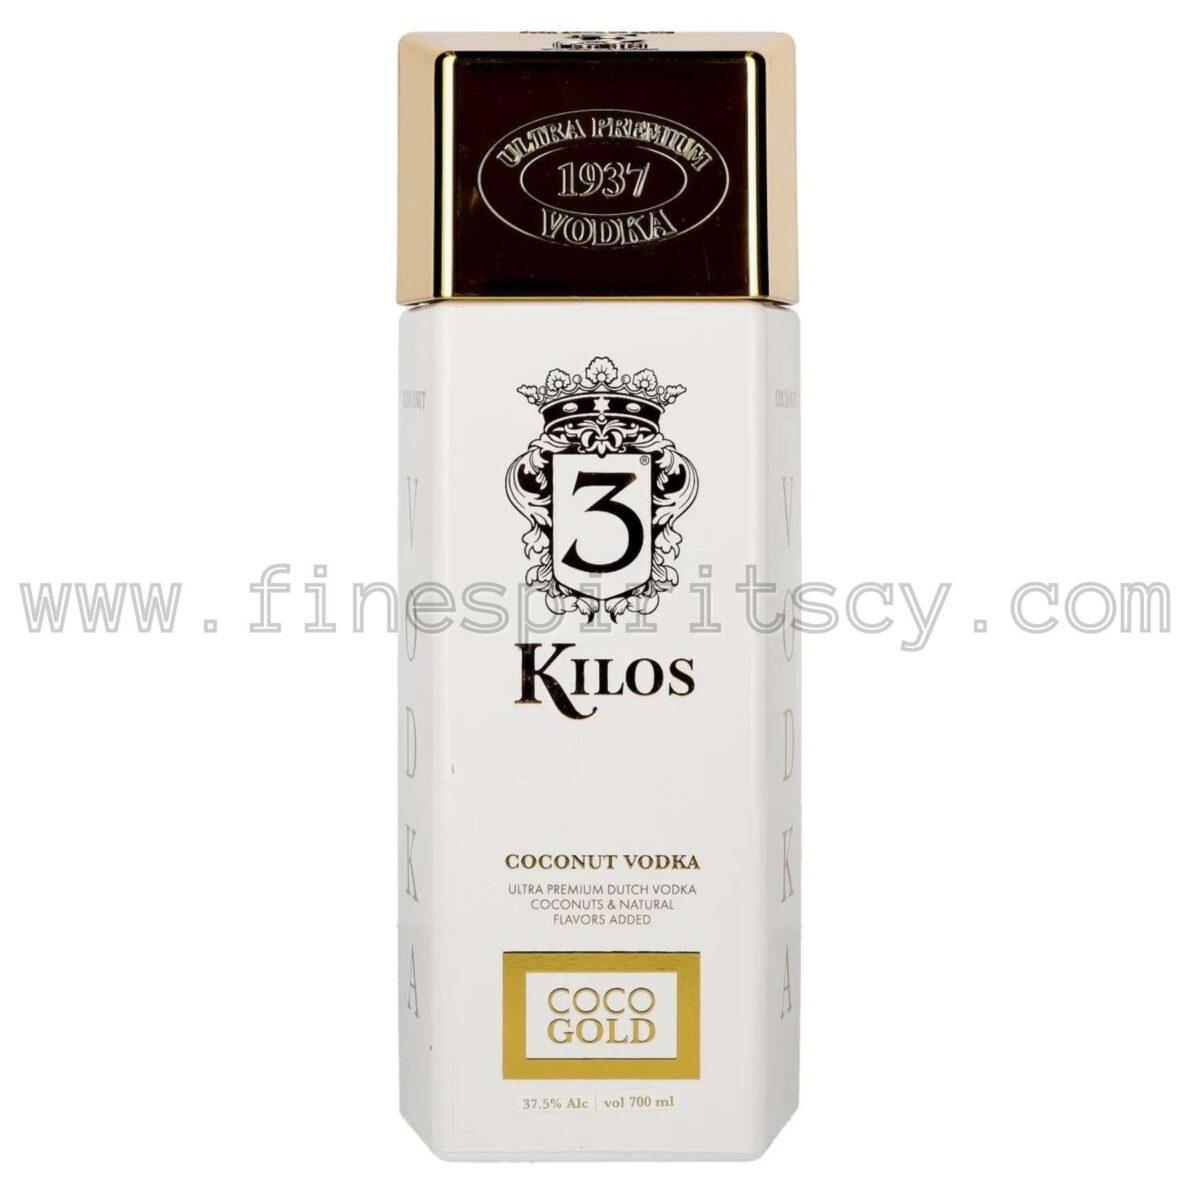 3 Kilos Gold Coconut Vodka 700ml 70cl 0.7L Cyprus Price FSCY Online Order